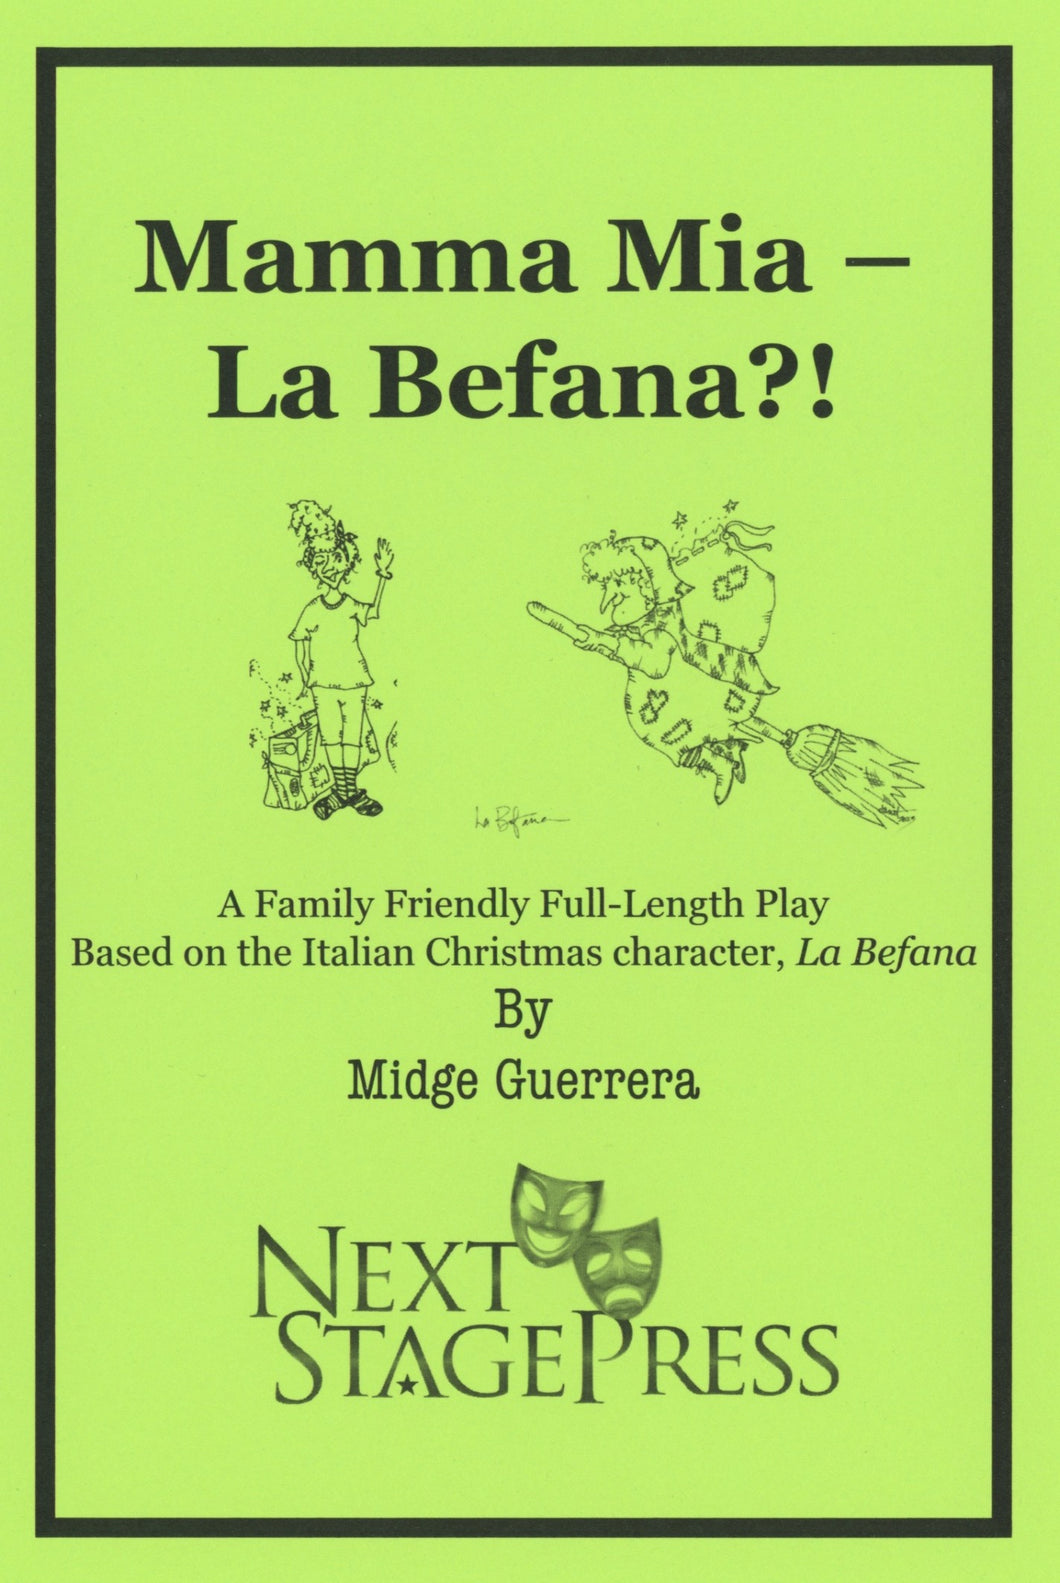 MAMMA Mia - LA BEFANA?! by Midge Guerrera